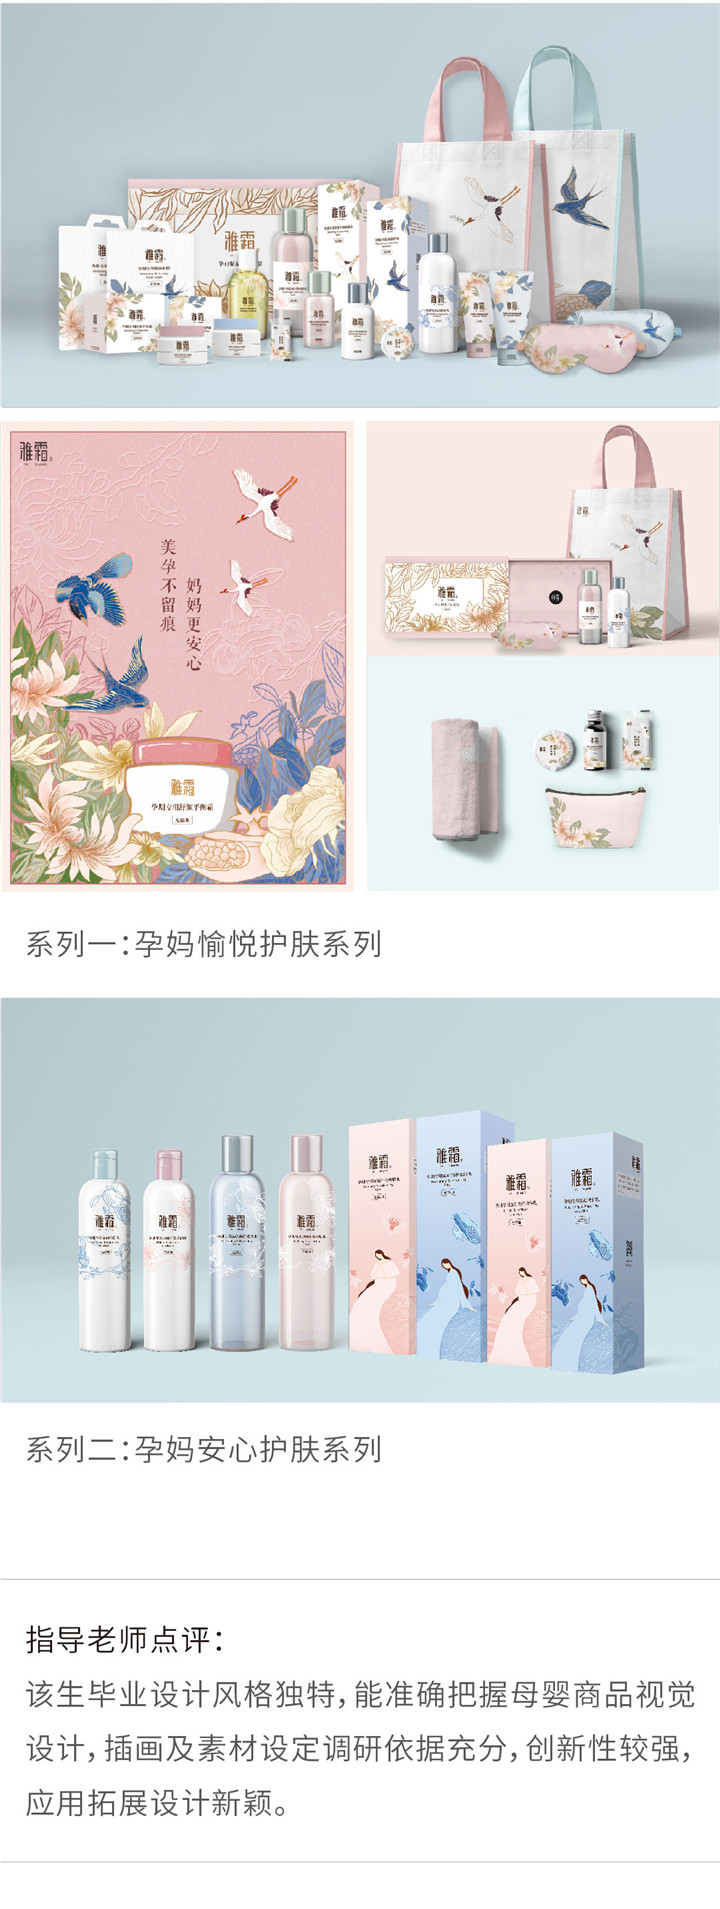 视觉传达——雅霜孕产妇系列护肤品-设计中国